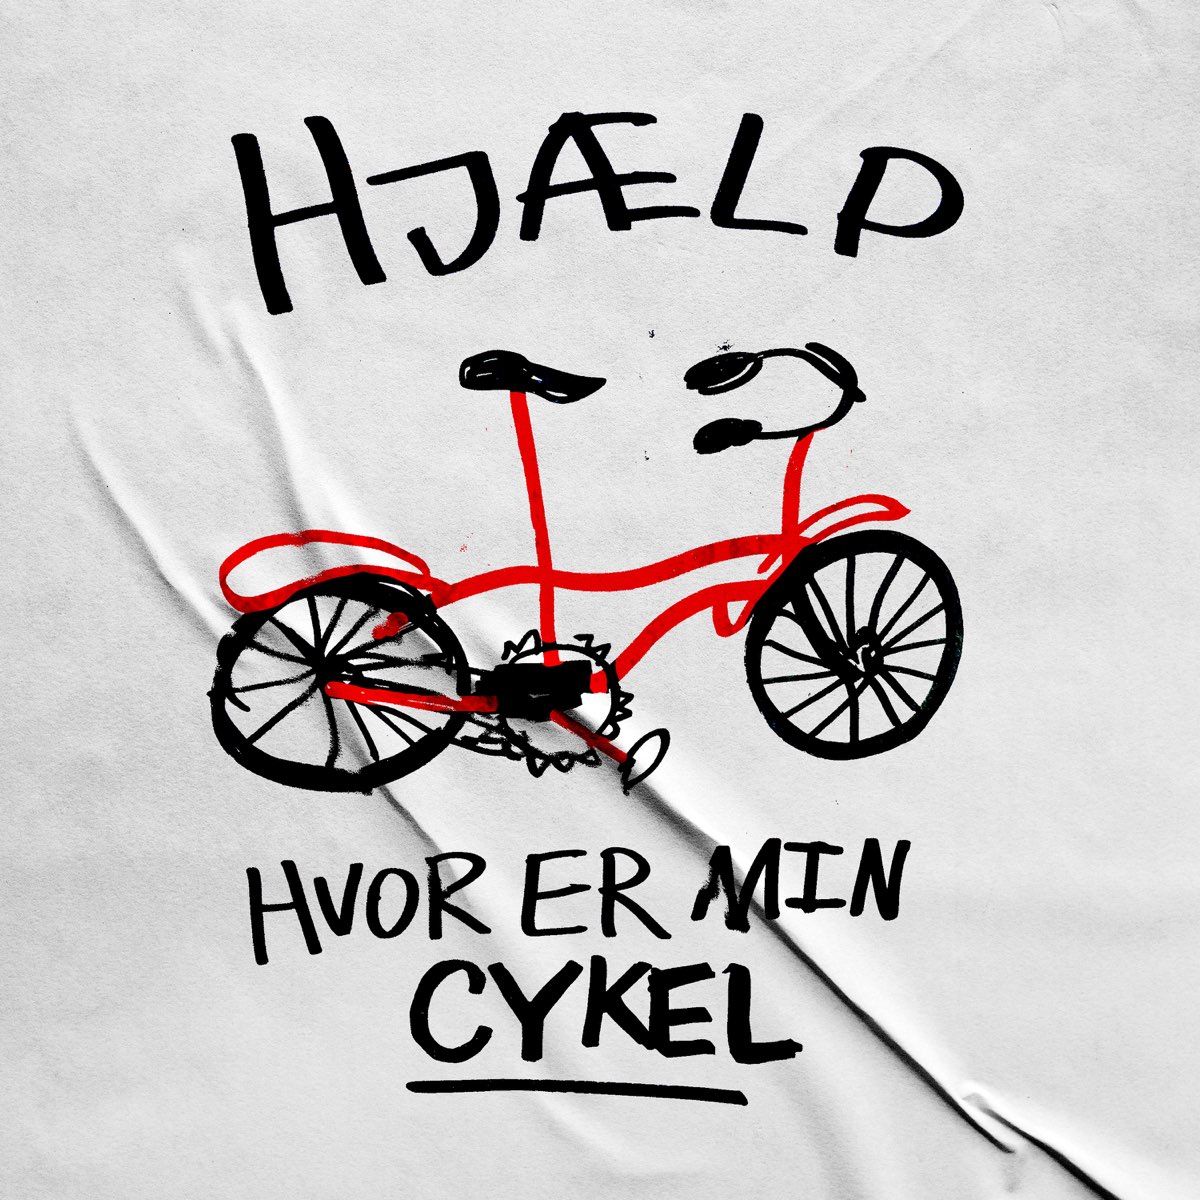 Hvor Er Min Cykel - Single by HJÆLP on Apple Music